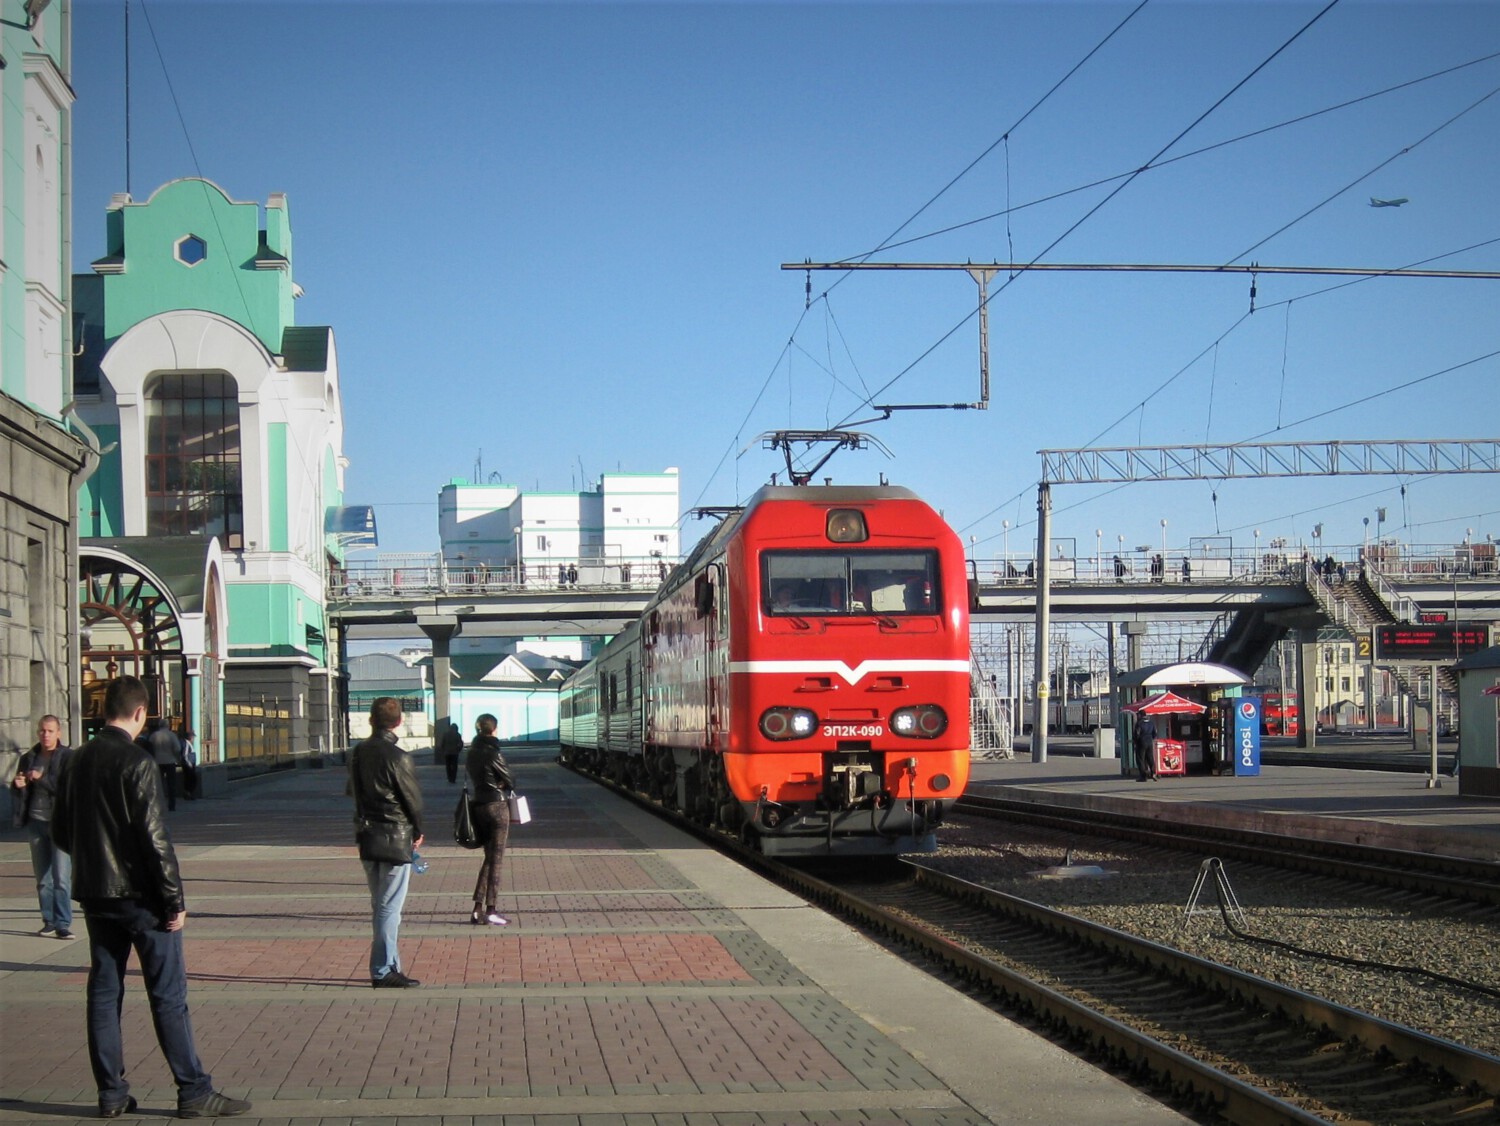 Einfahrender Zug der Transsibirischen Eisenbahn am Bahnhof von Nowosibirsk.
East Rail Stories